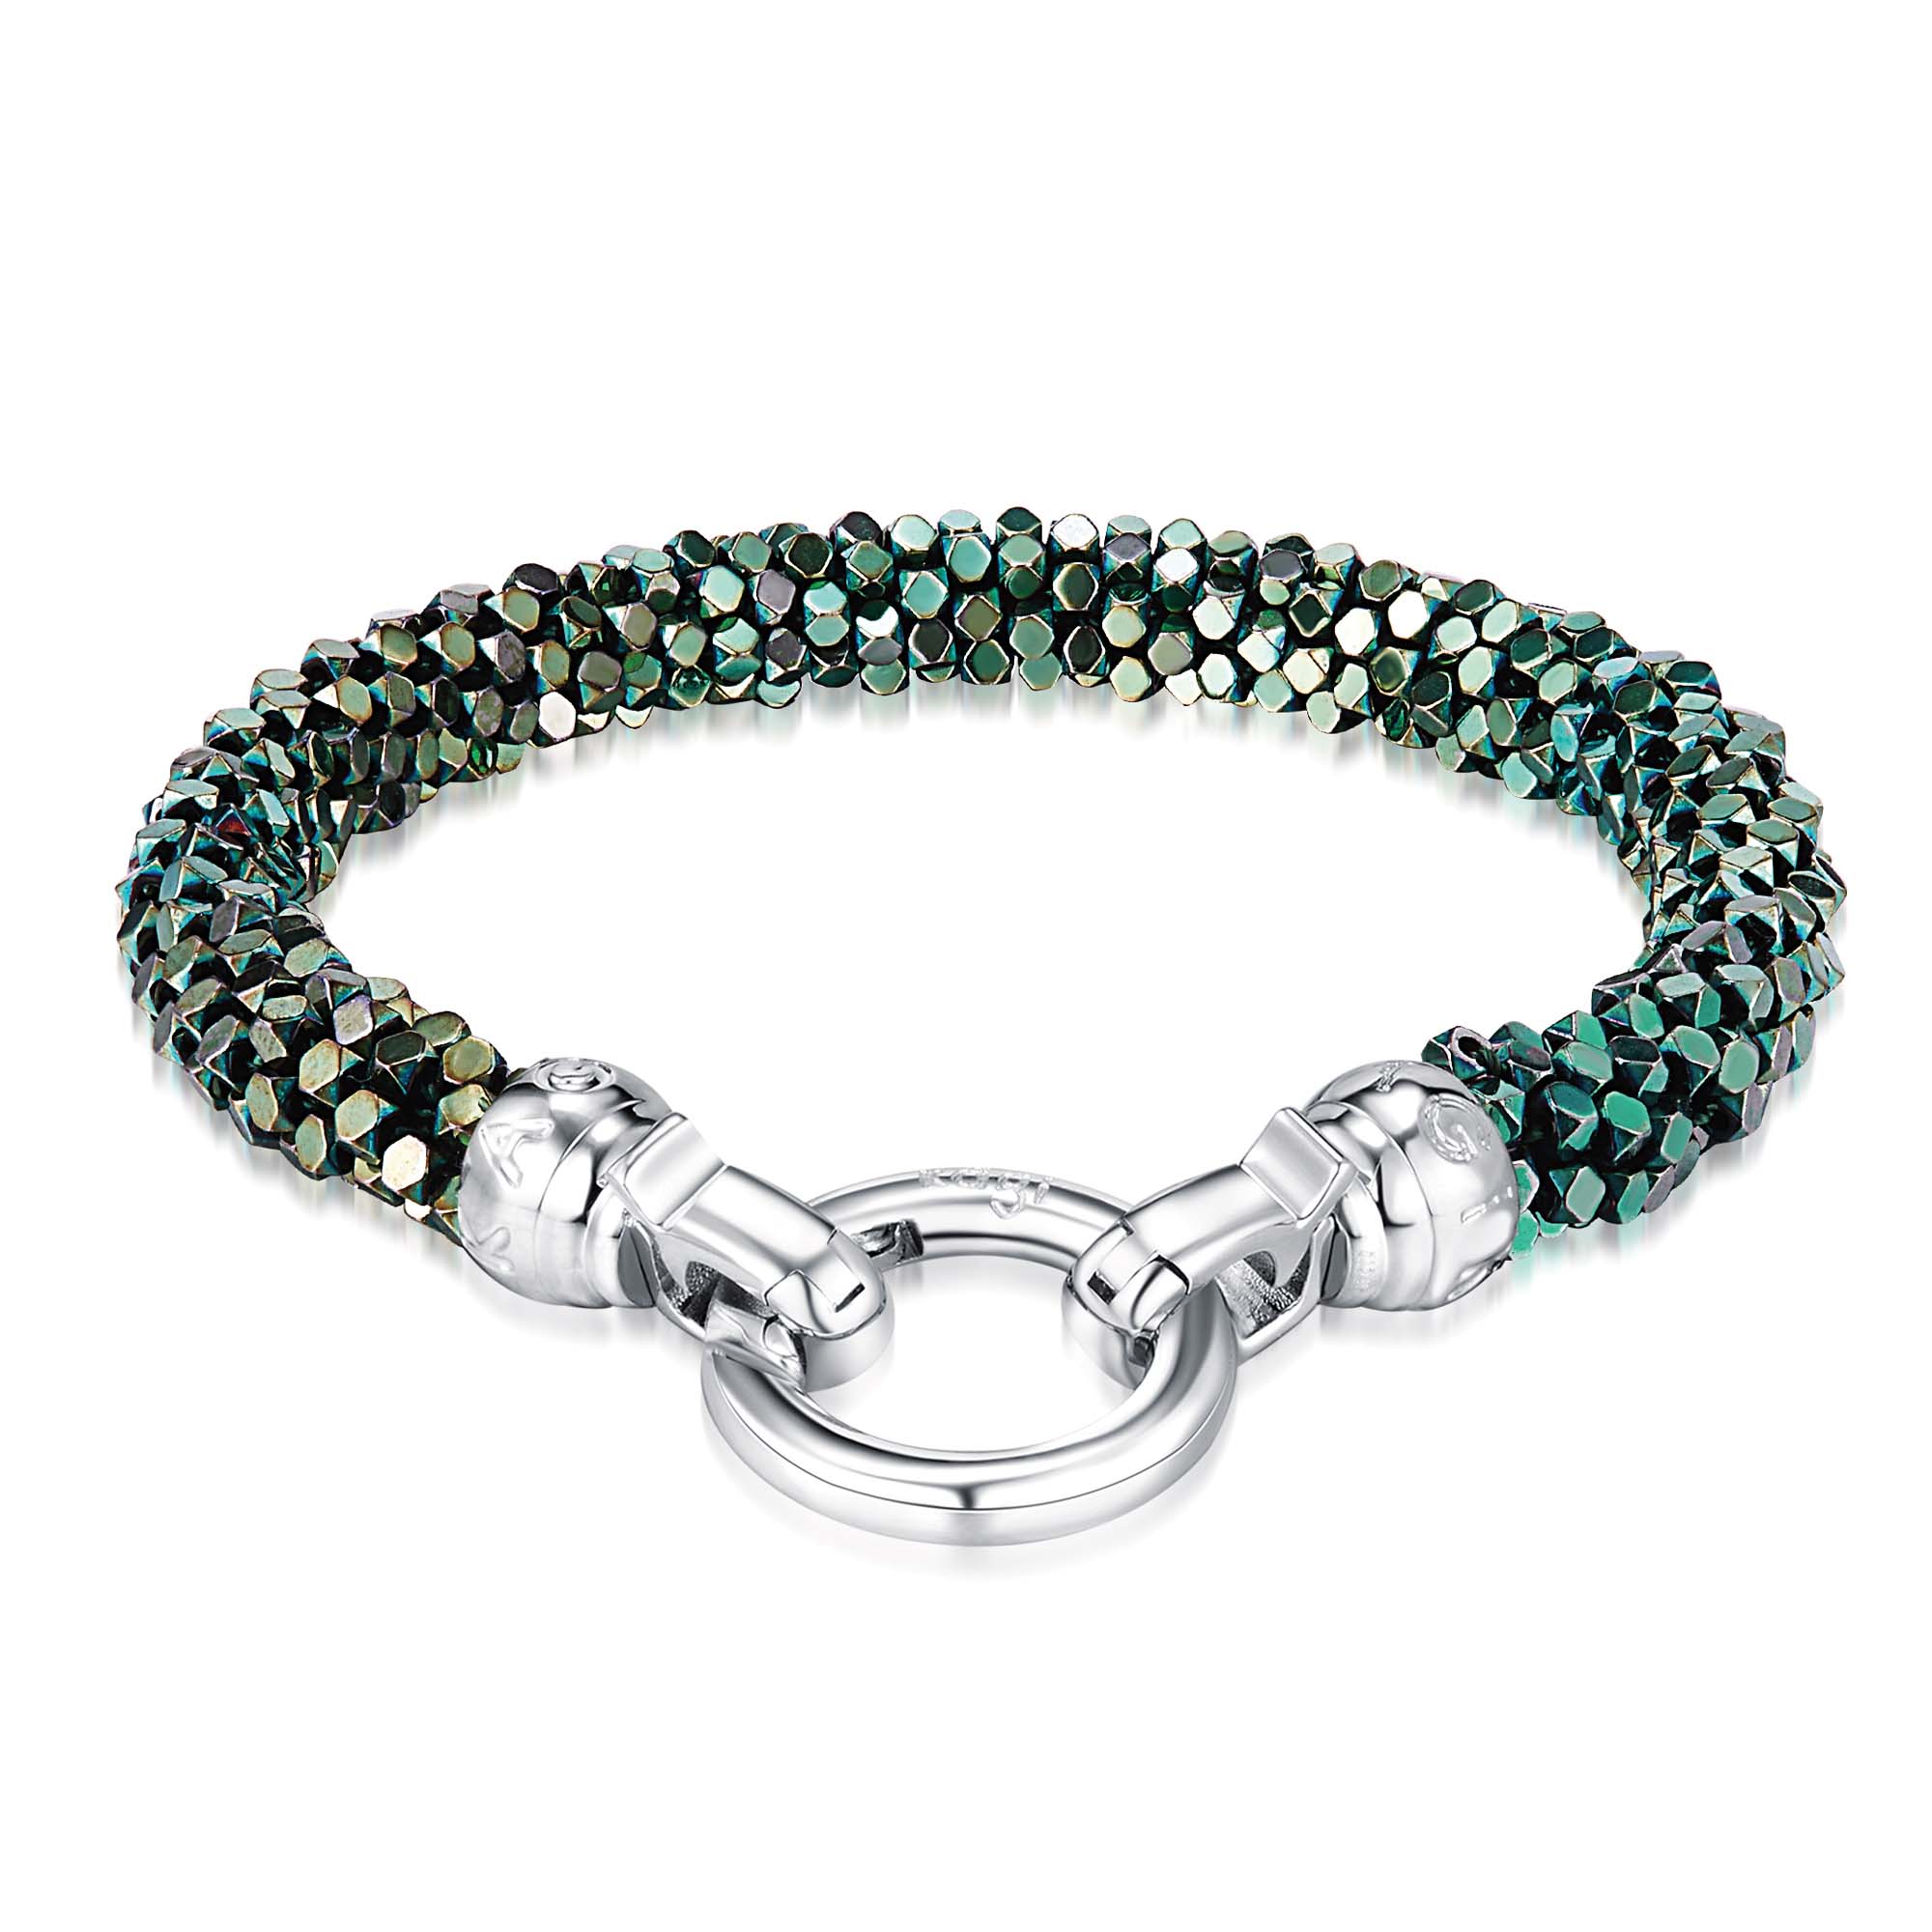 Kagi Blue Danube Weave Bracelet $169 www.kagi.net